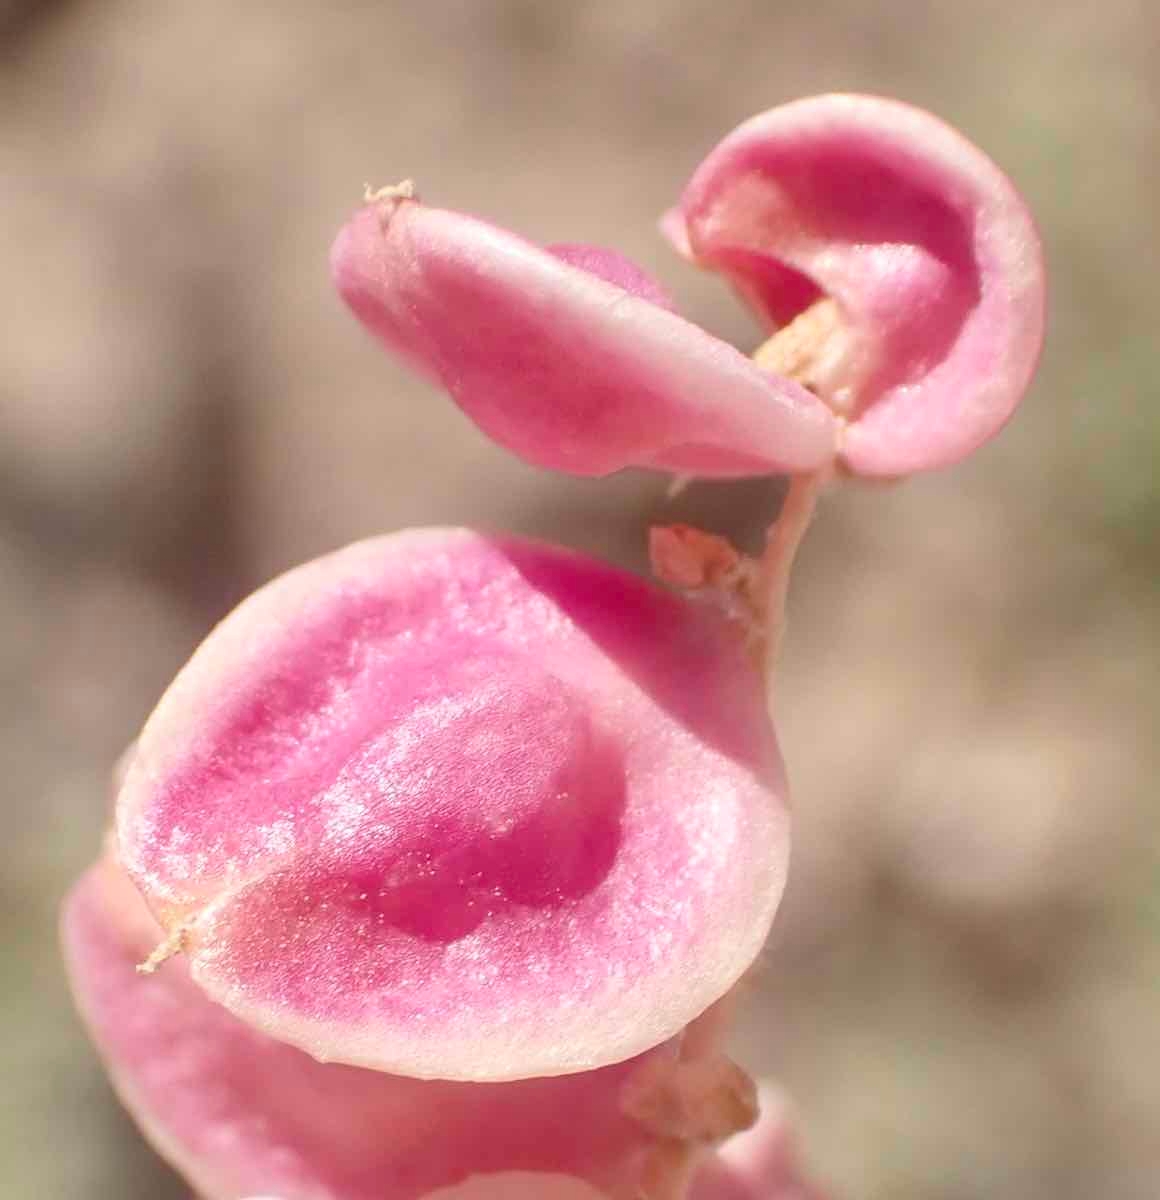 Grayia spinosa